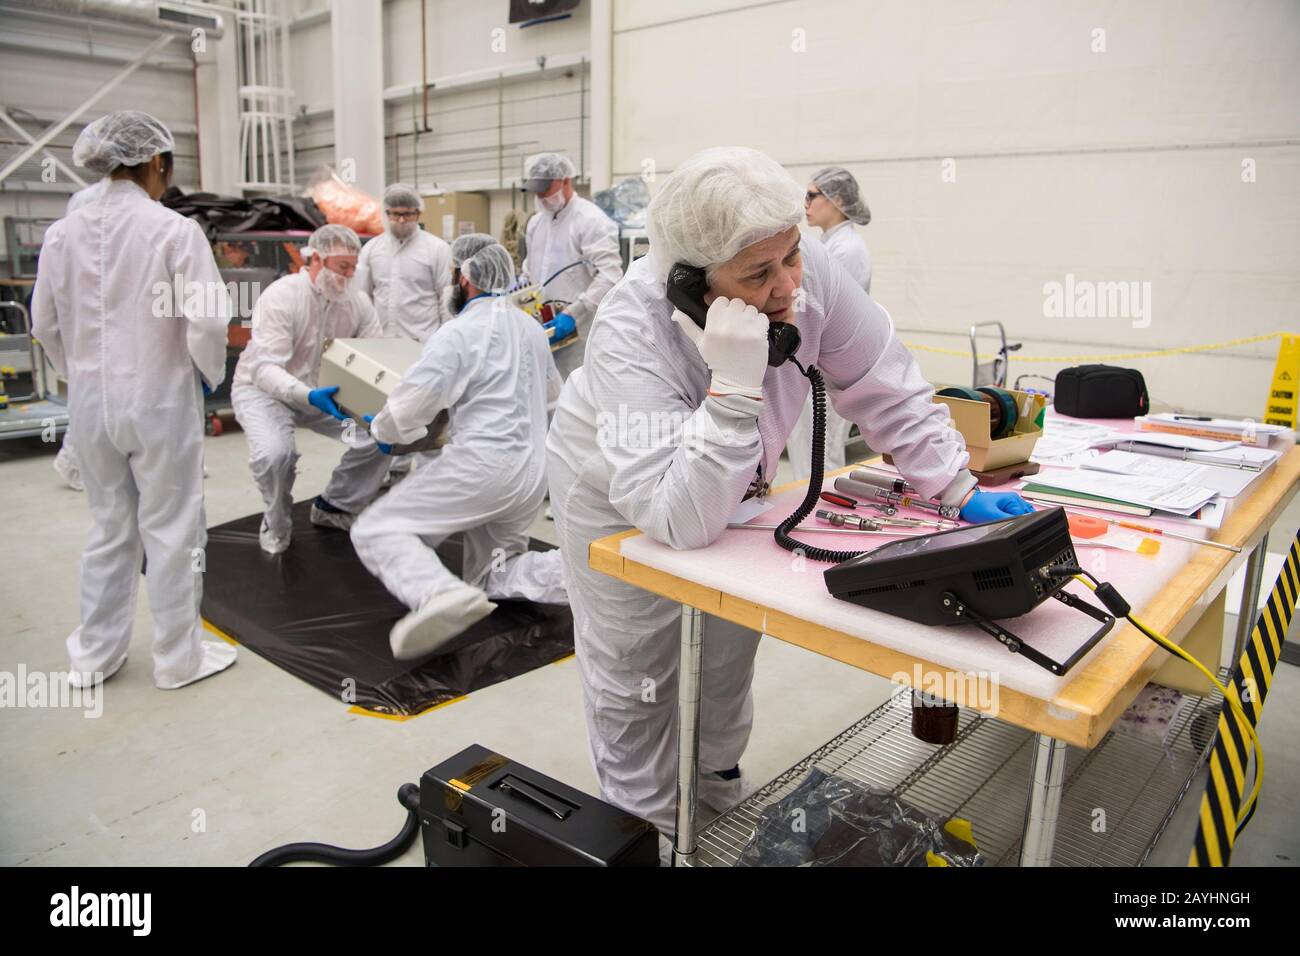 Los ingenieros de la misión reciben y preparan artículos científicos y de investigación y alimentos para la carga final en la nave espacial Cygnus reupply a bordo del cohete Northrop Grumman Antares, el 8 de febrero de 2020, en la instalación de integración horizontal (HIF) de la instalación de vuelo Wallops de la NASA en Virginia. La 13ª misión contratada de reabastecimiento de carga de Northrop Grumman con la NASA a la Estación Espacial Internacional entregará más de 7,500 libras de ciencia e investigación, suministros de tripulación y equipo de vehículos al laboratorio orbital y a su tripulación. Foto de la NASA por Aubrey Gemignani/UPI Foto de stock